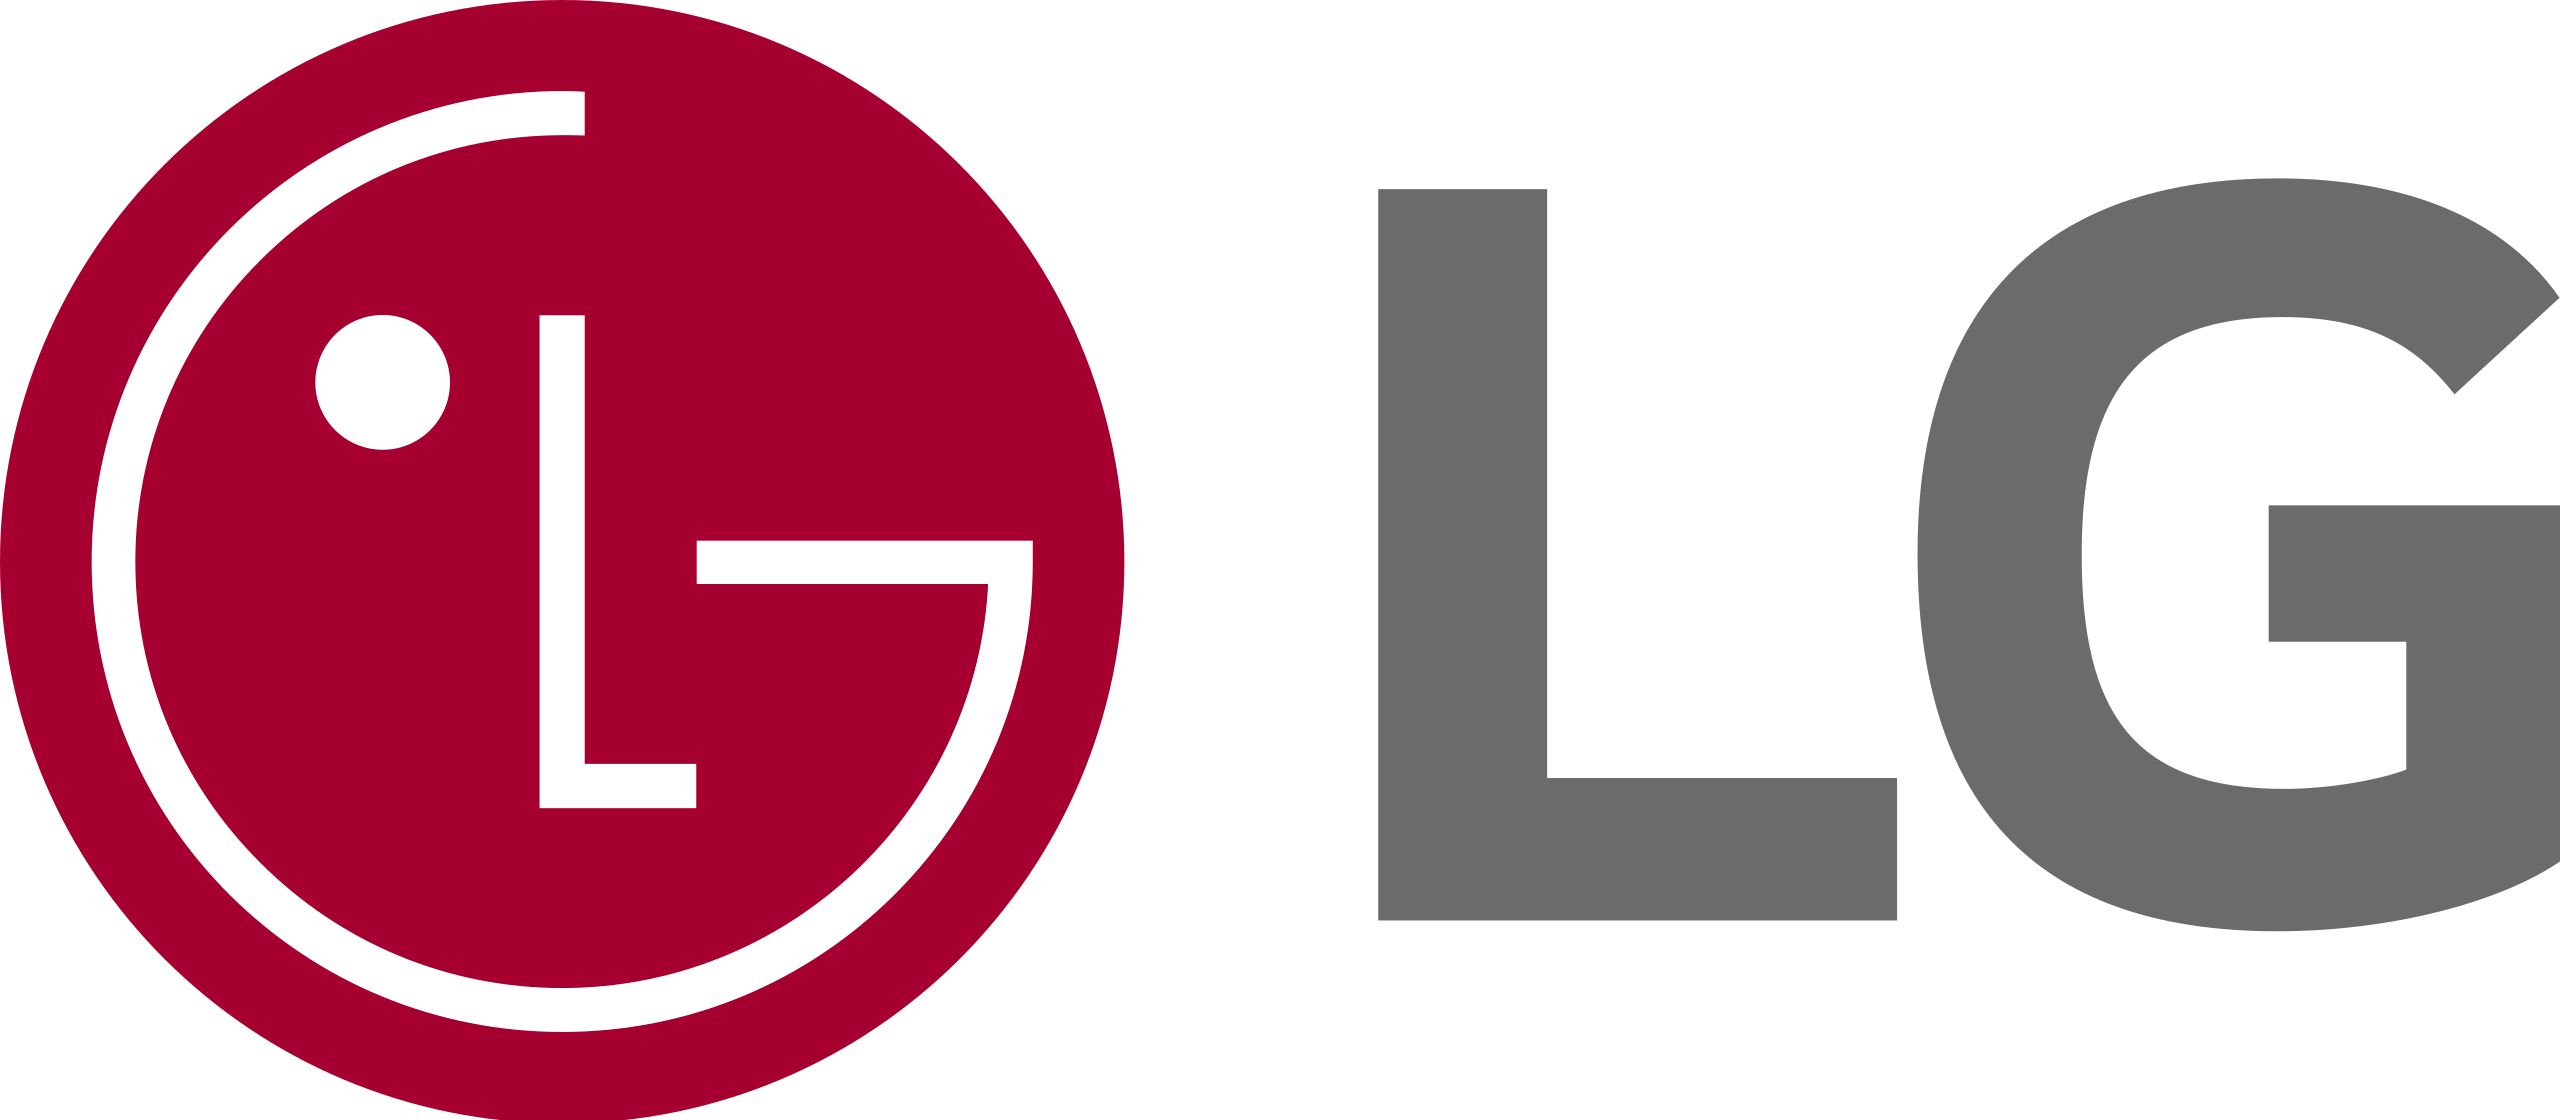 LG_logo